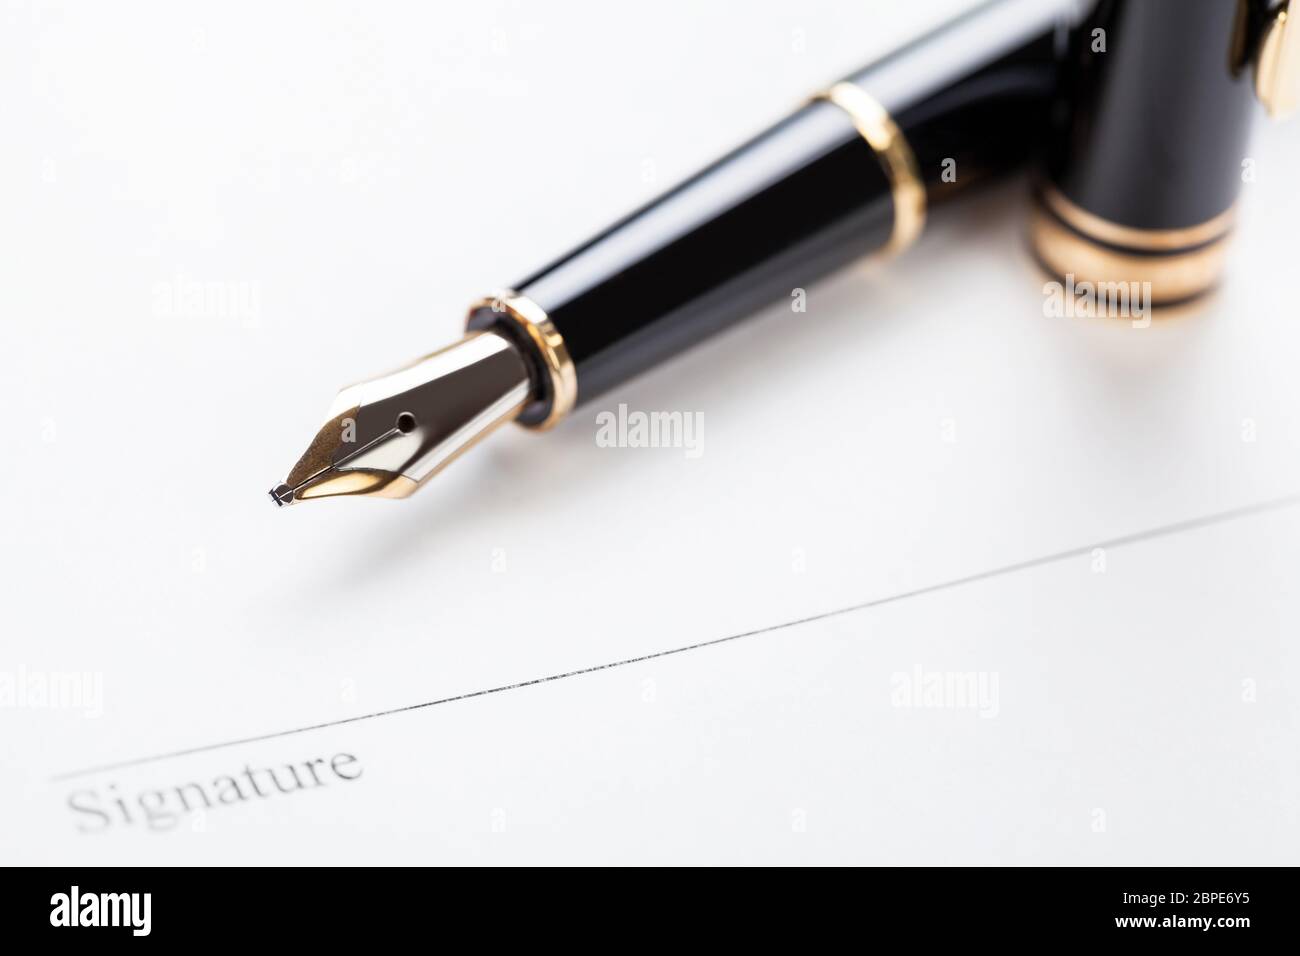 Signatur unterschrift mit füller auf papier détails d'affaires makro Banque D'Images